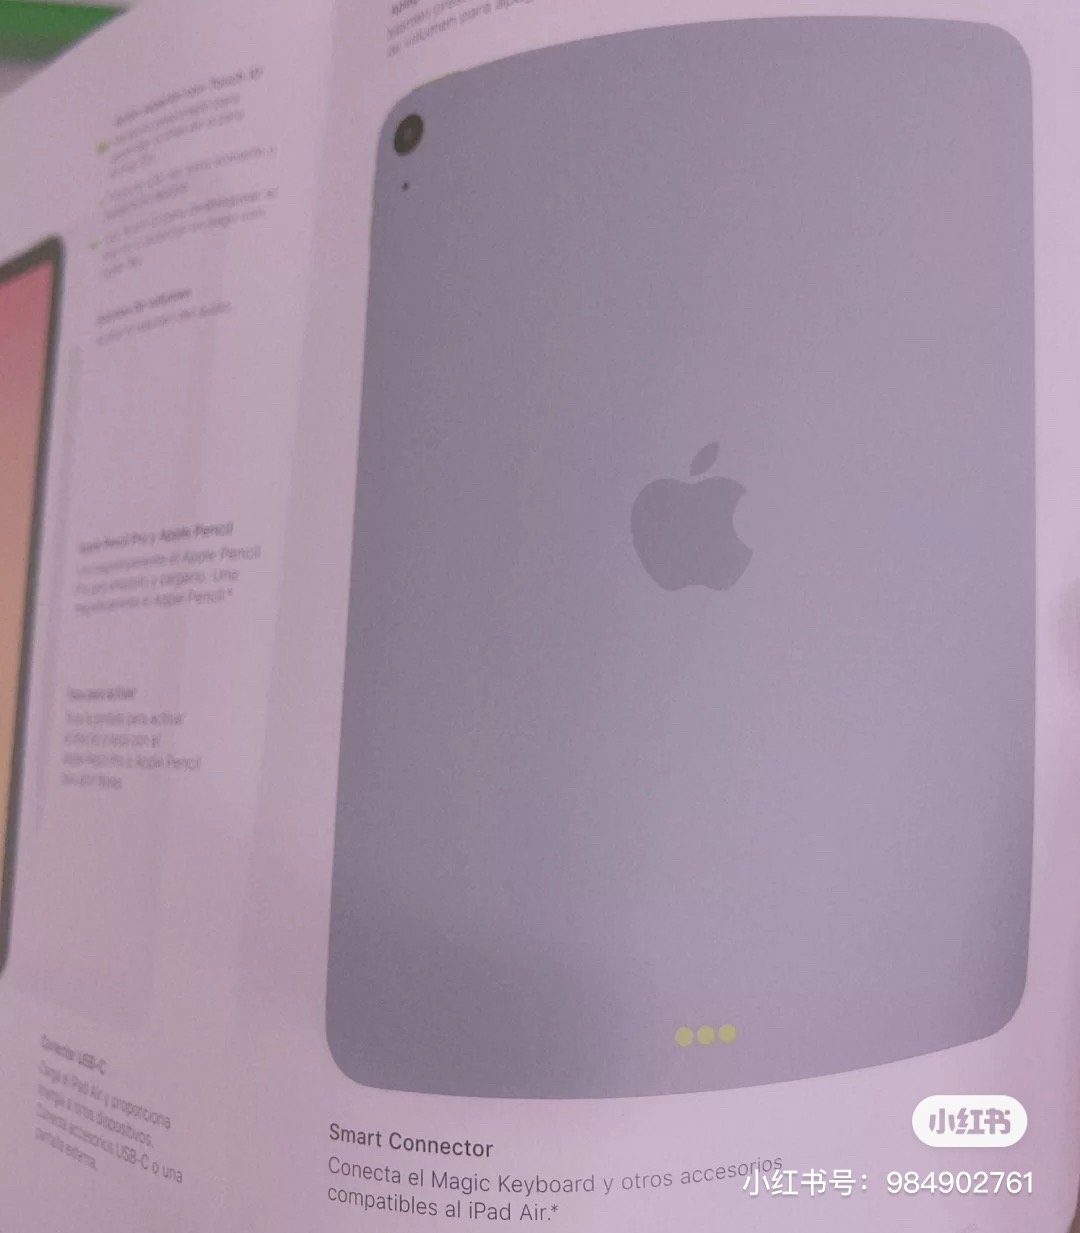 Tài liệu về iPad Air 4 xuất hiện, cho thấy màn hình viền mỏng với Touch ID và cổng USB-C